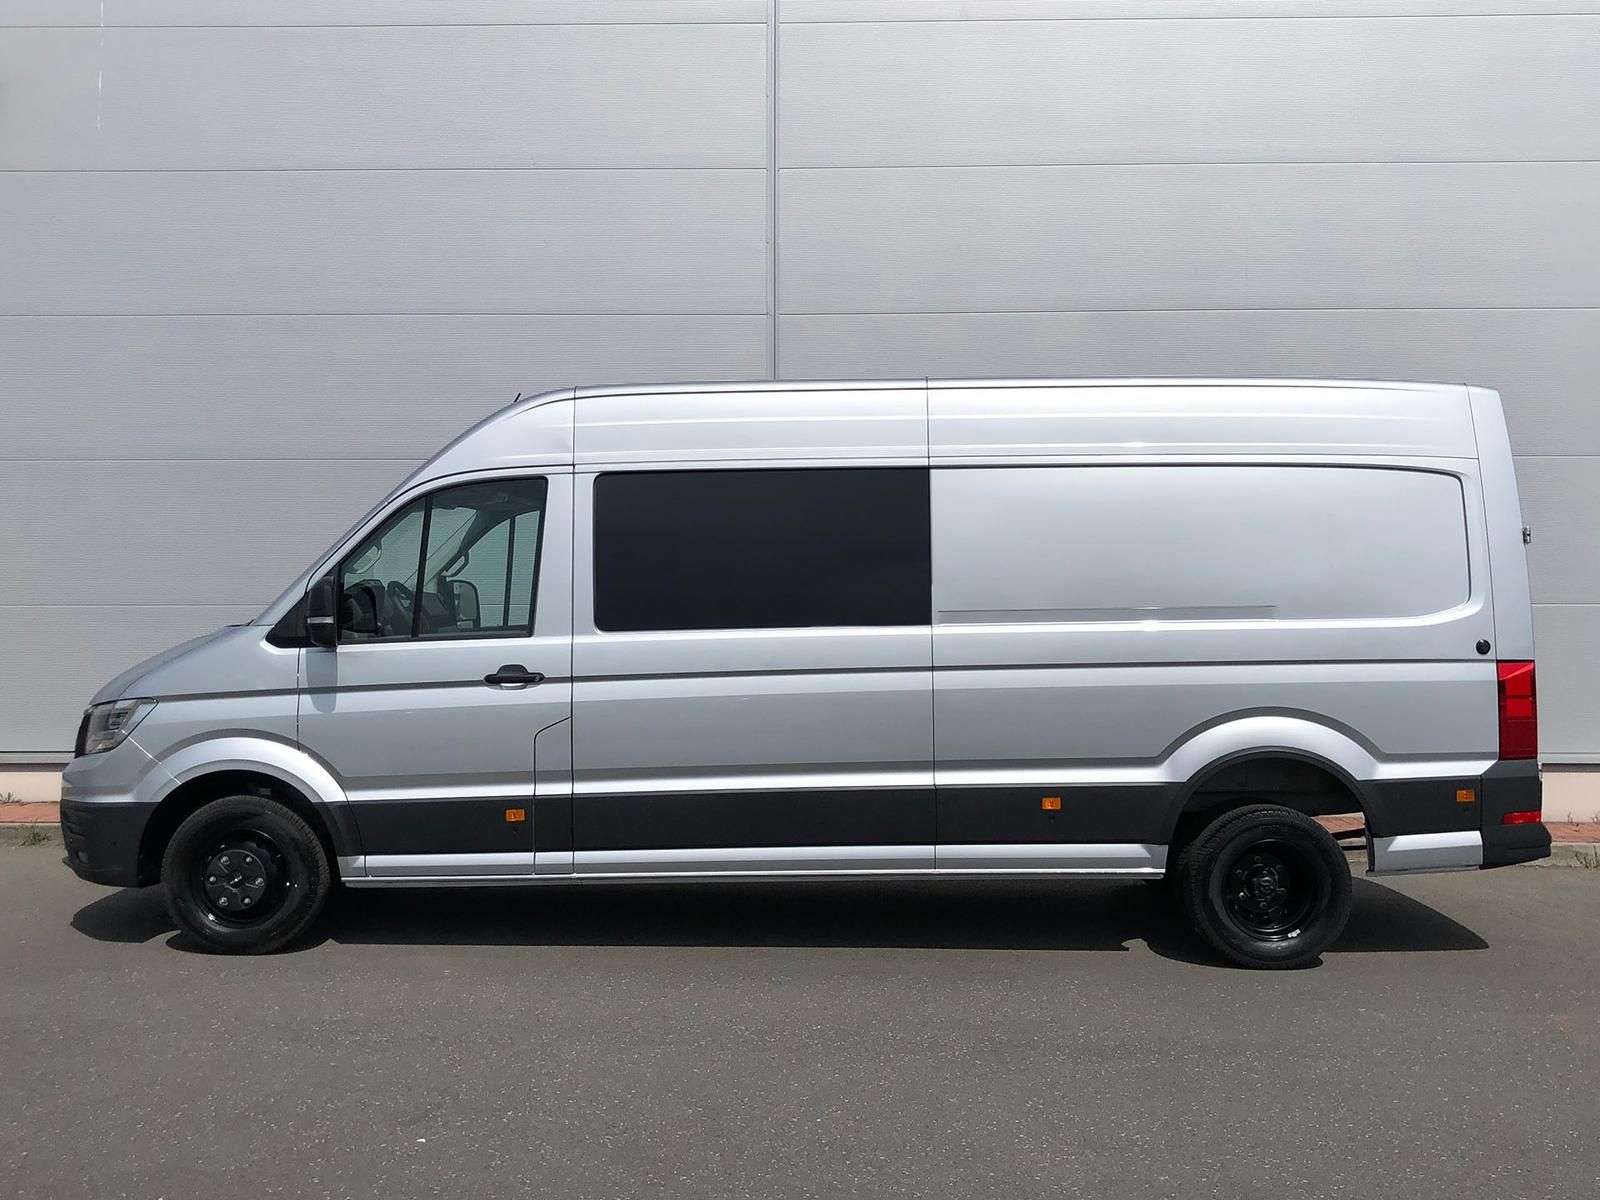 Volkswagen Crafter Van in Silver pre-registered in Sangerhausen for € 69,890.-